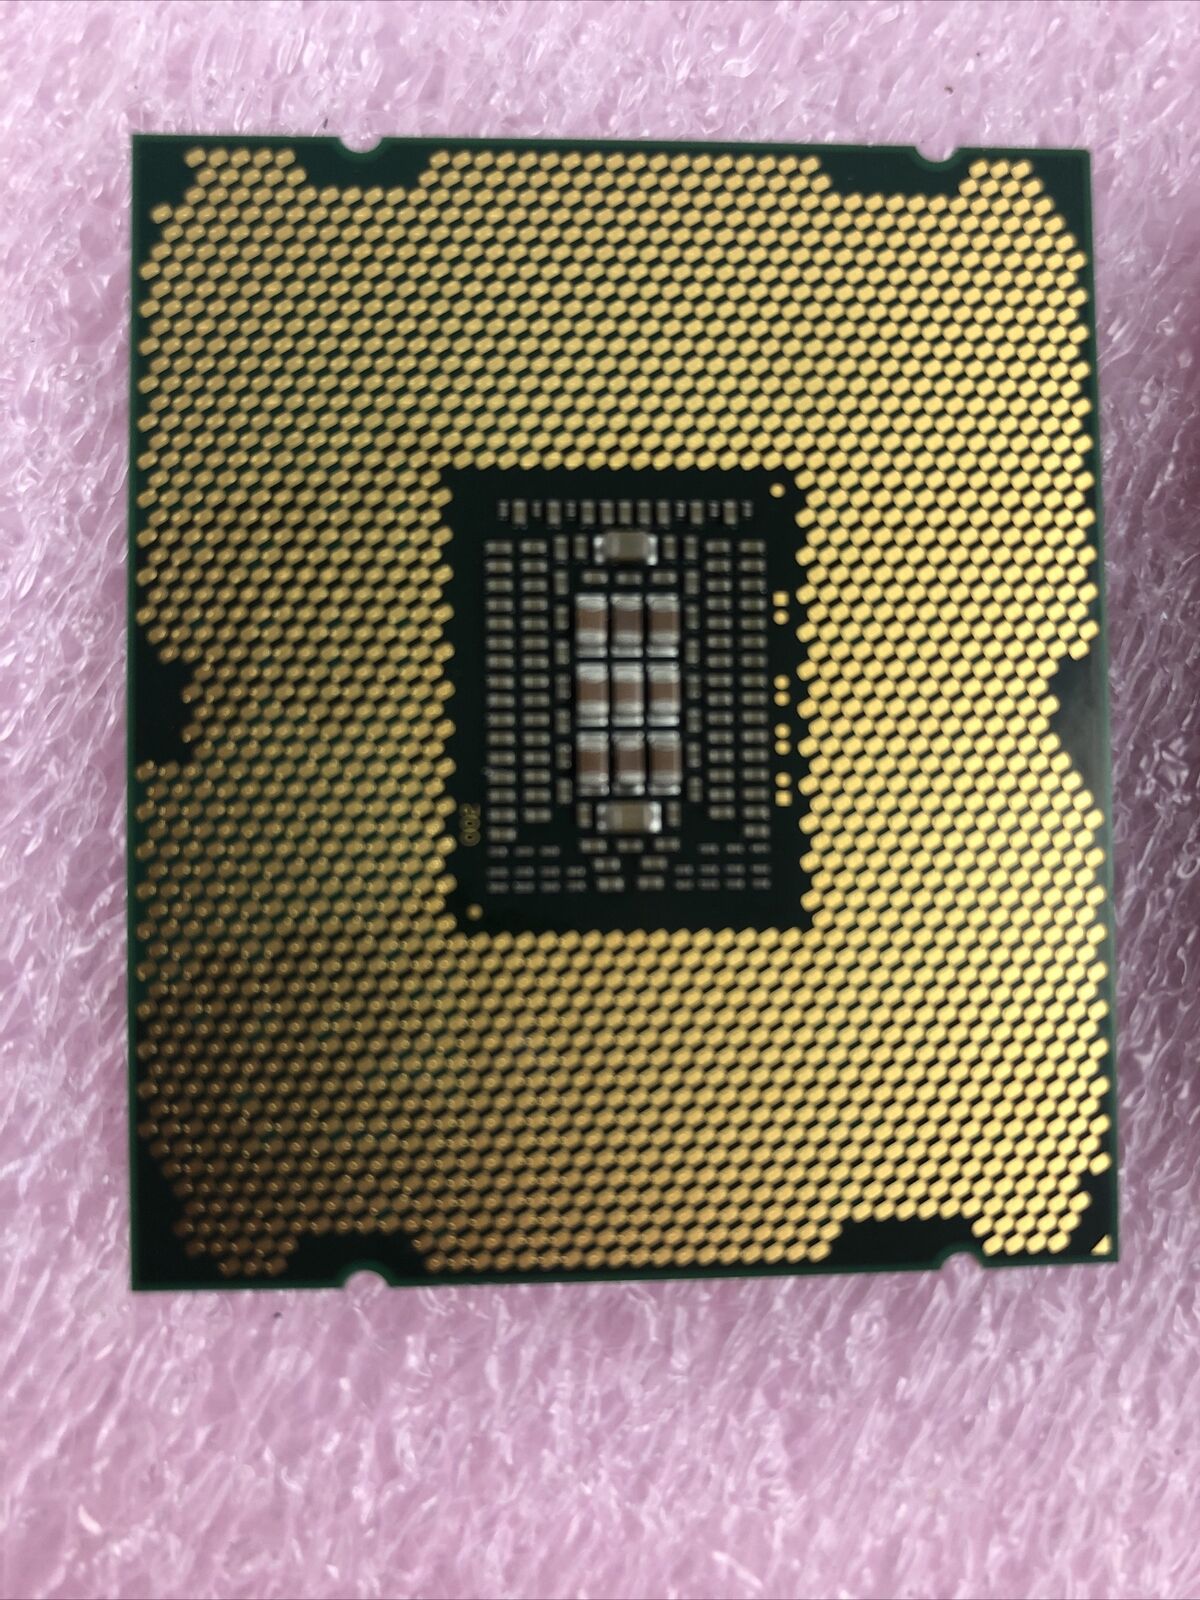 Intel Xeon E5-2630 2.3GHz Processor